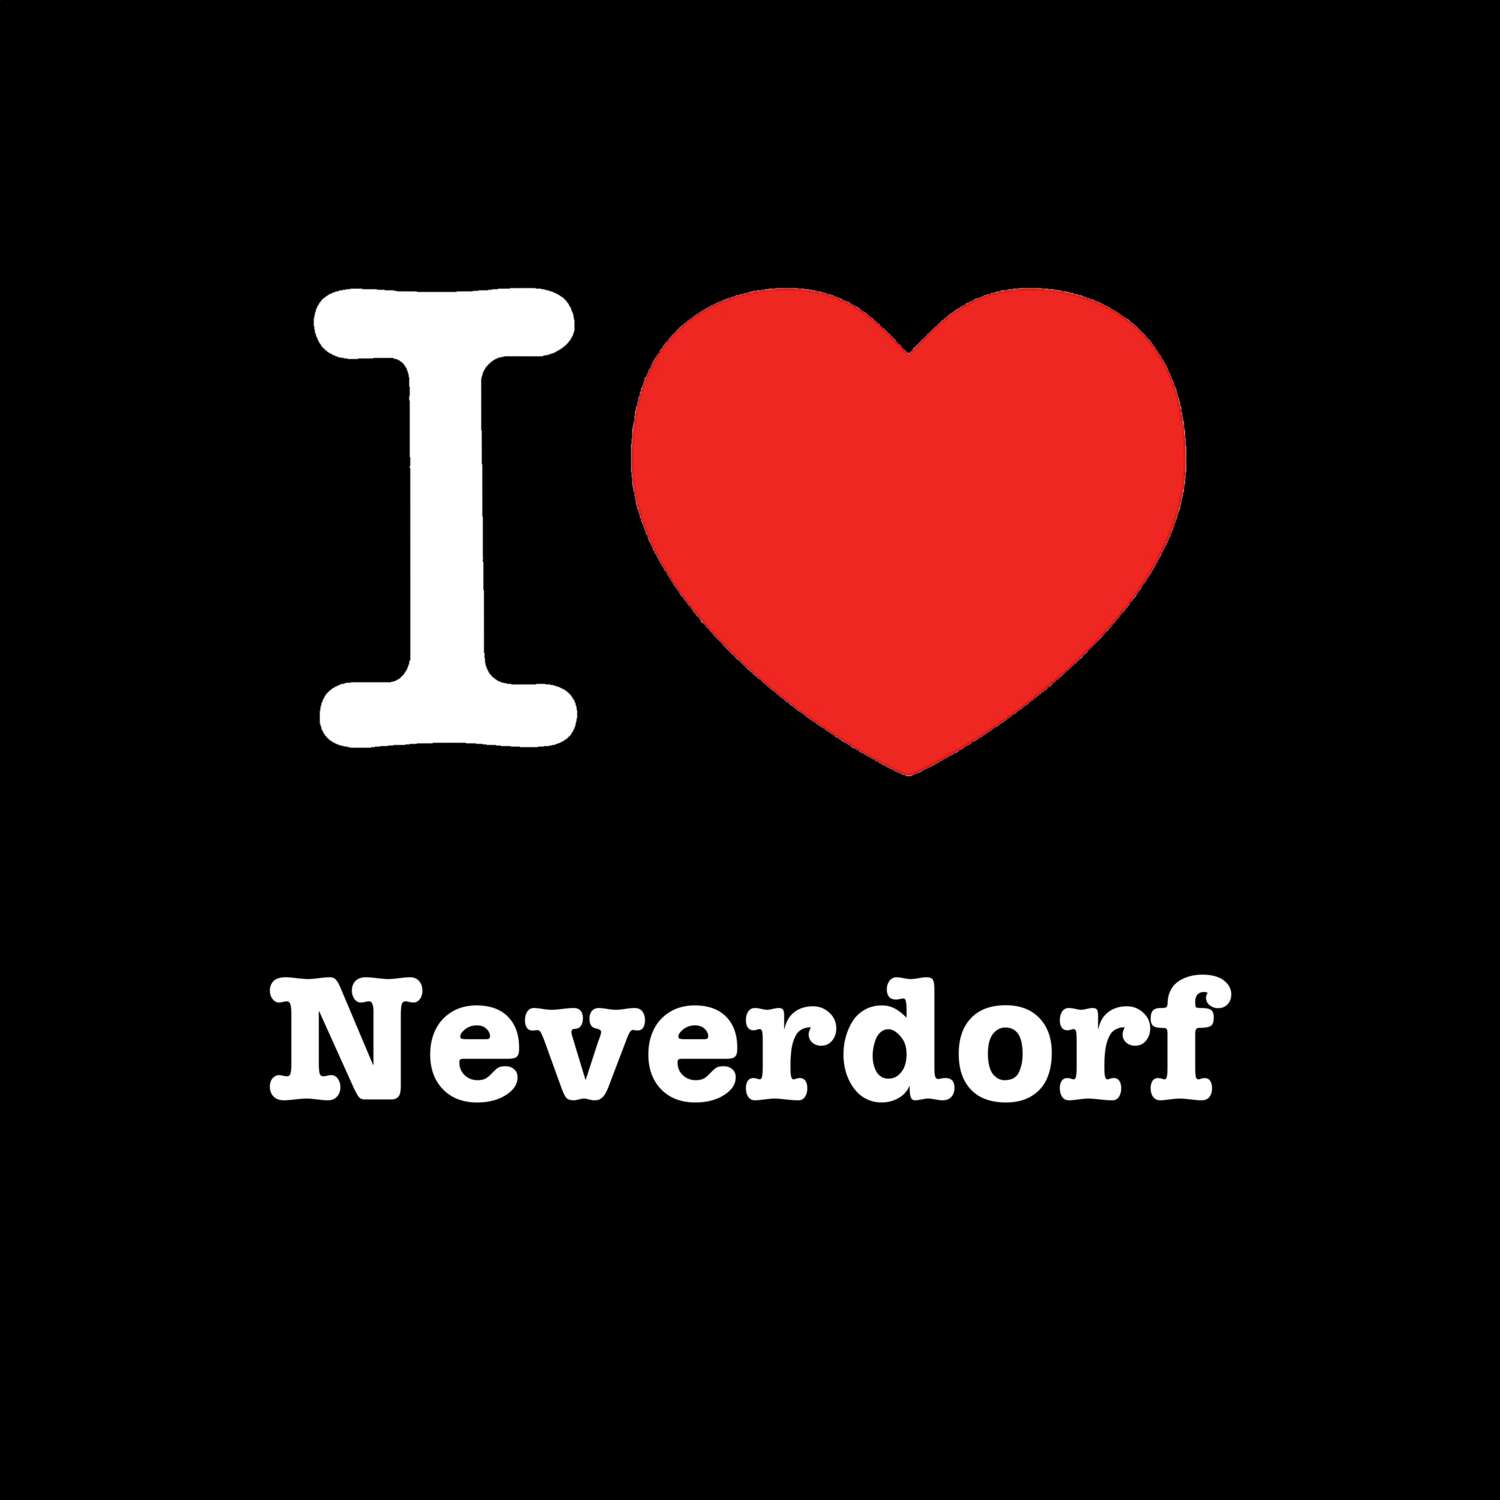 Neverdorf T-Shirt »I love«